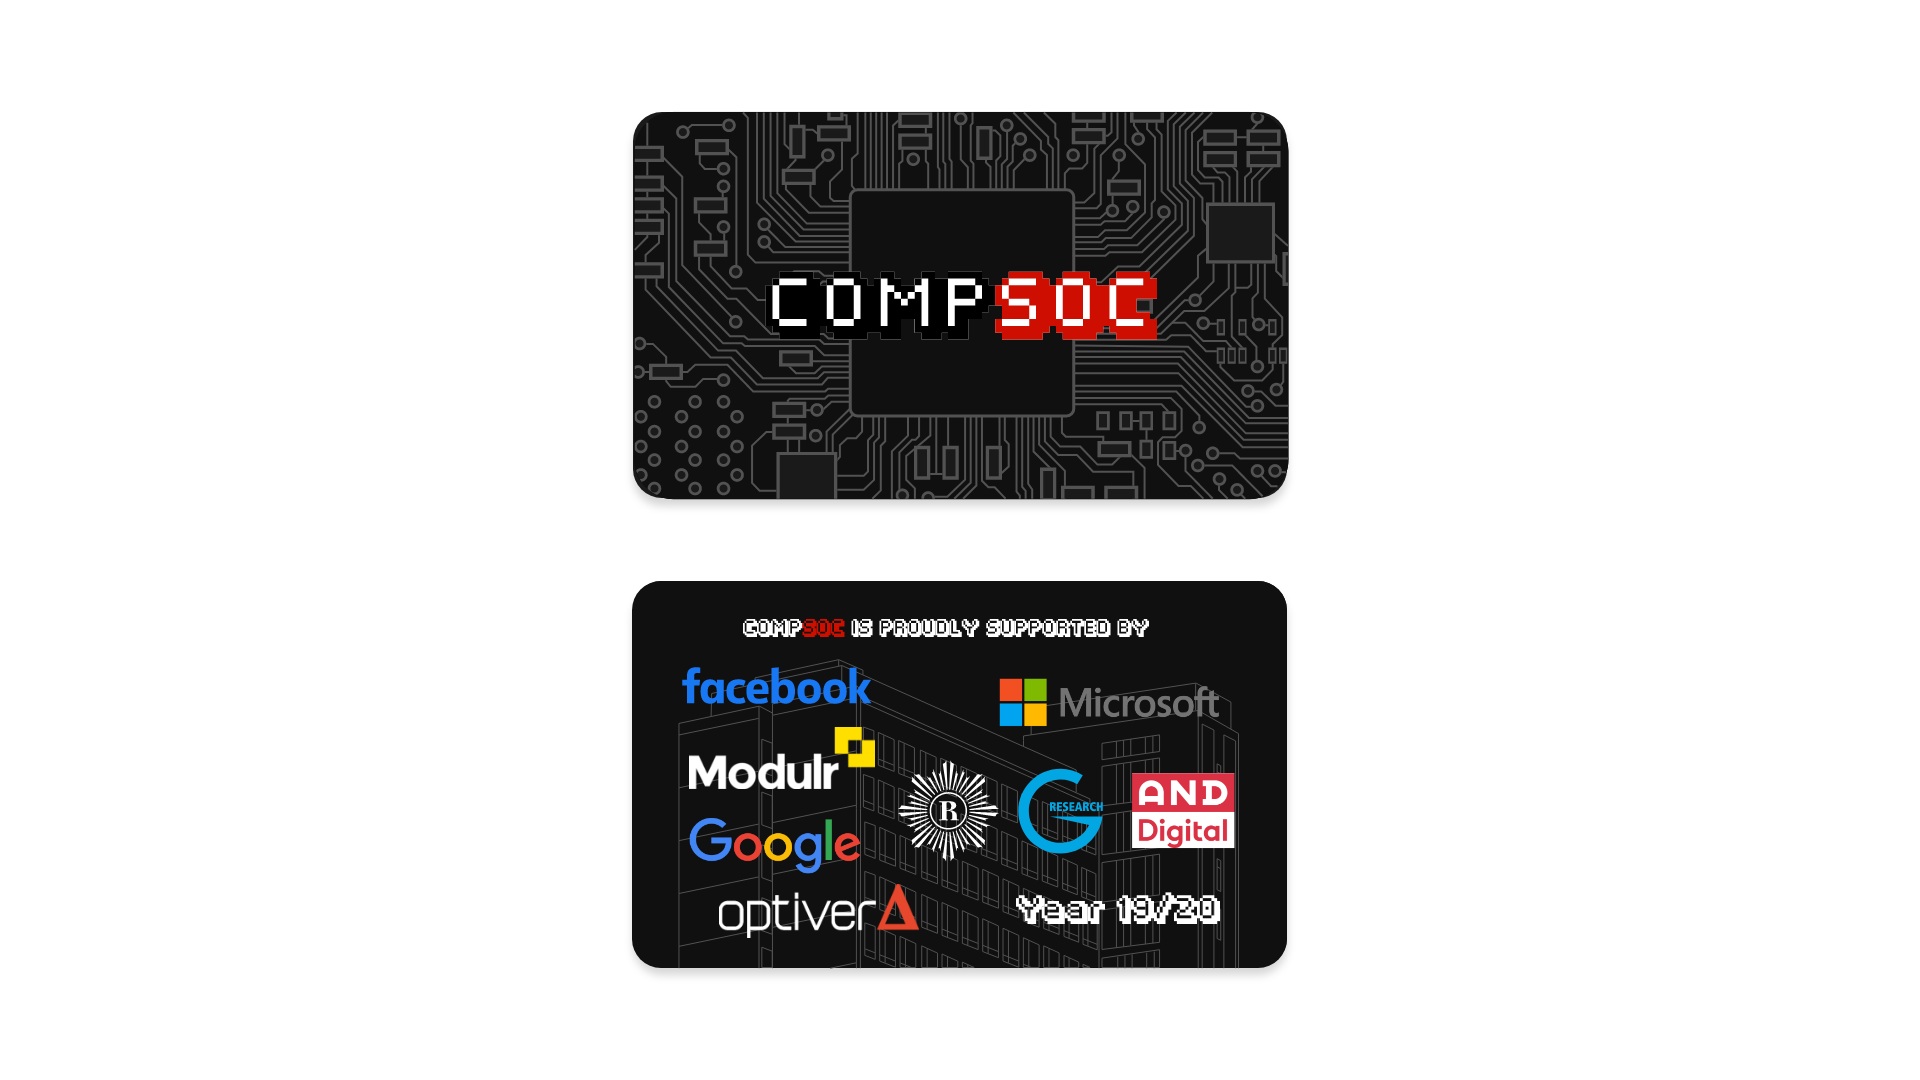 CompSoc membership card